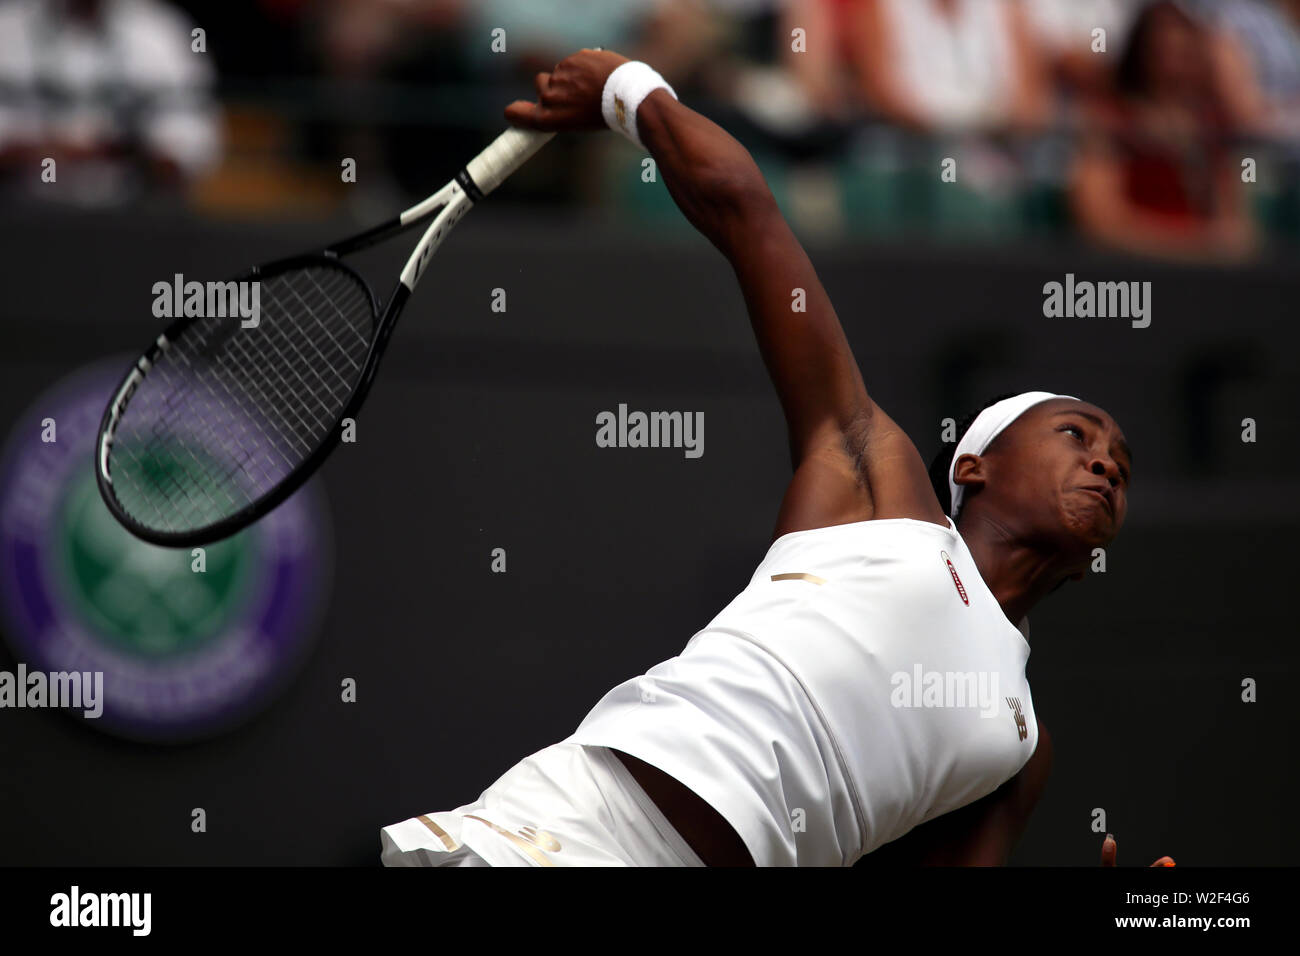 Wimbledon, 8. Juli 2019 - Cori Gauff während ihres Gleichen gegen Simona Halep heute in Wimbledon. Halep gewann ins Recht setzt. Stockfoto